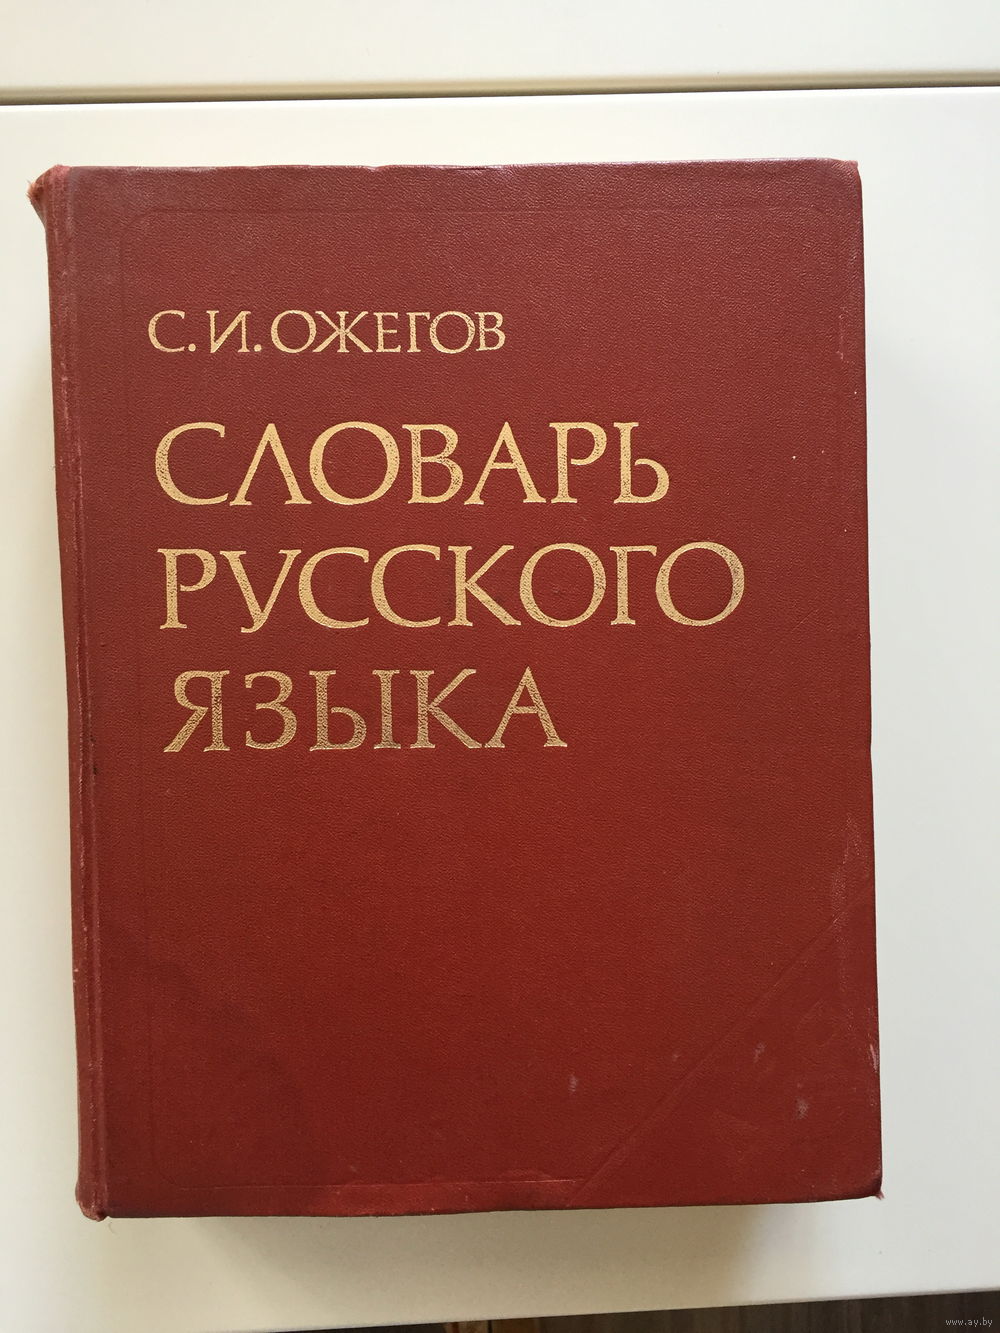 Словарь русского языка